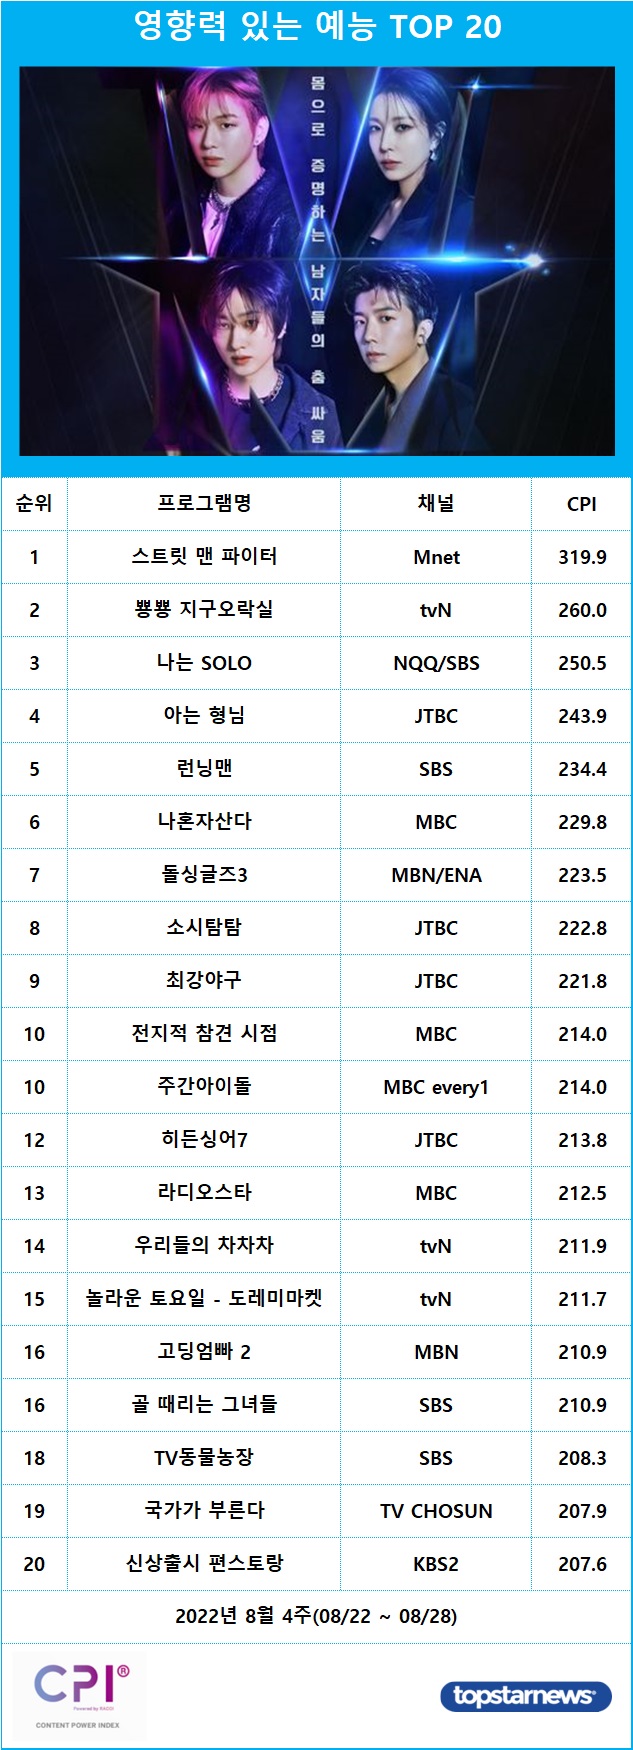 [표] 영향력 있는 프로그램 예능 TOP 20